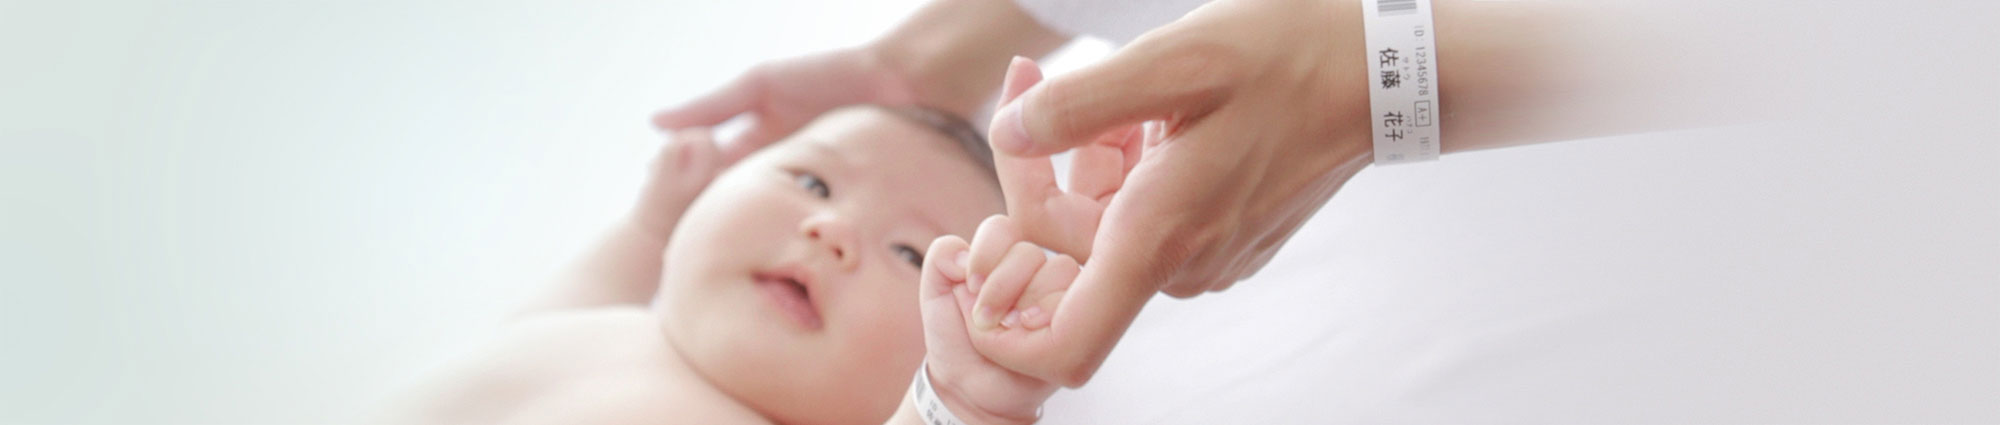 Baby houdt in ziekenhuis de vinger van een van de ouders vast - beiden dragen polsbandjes